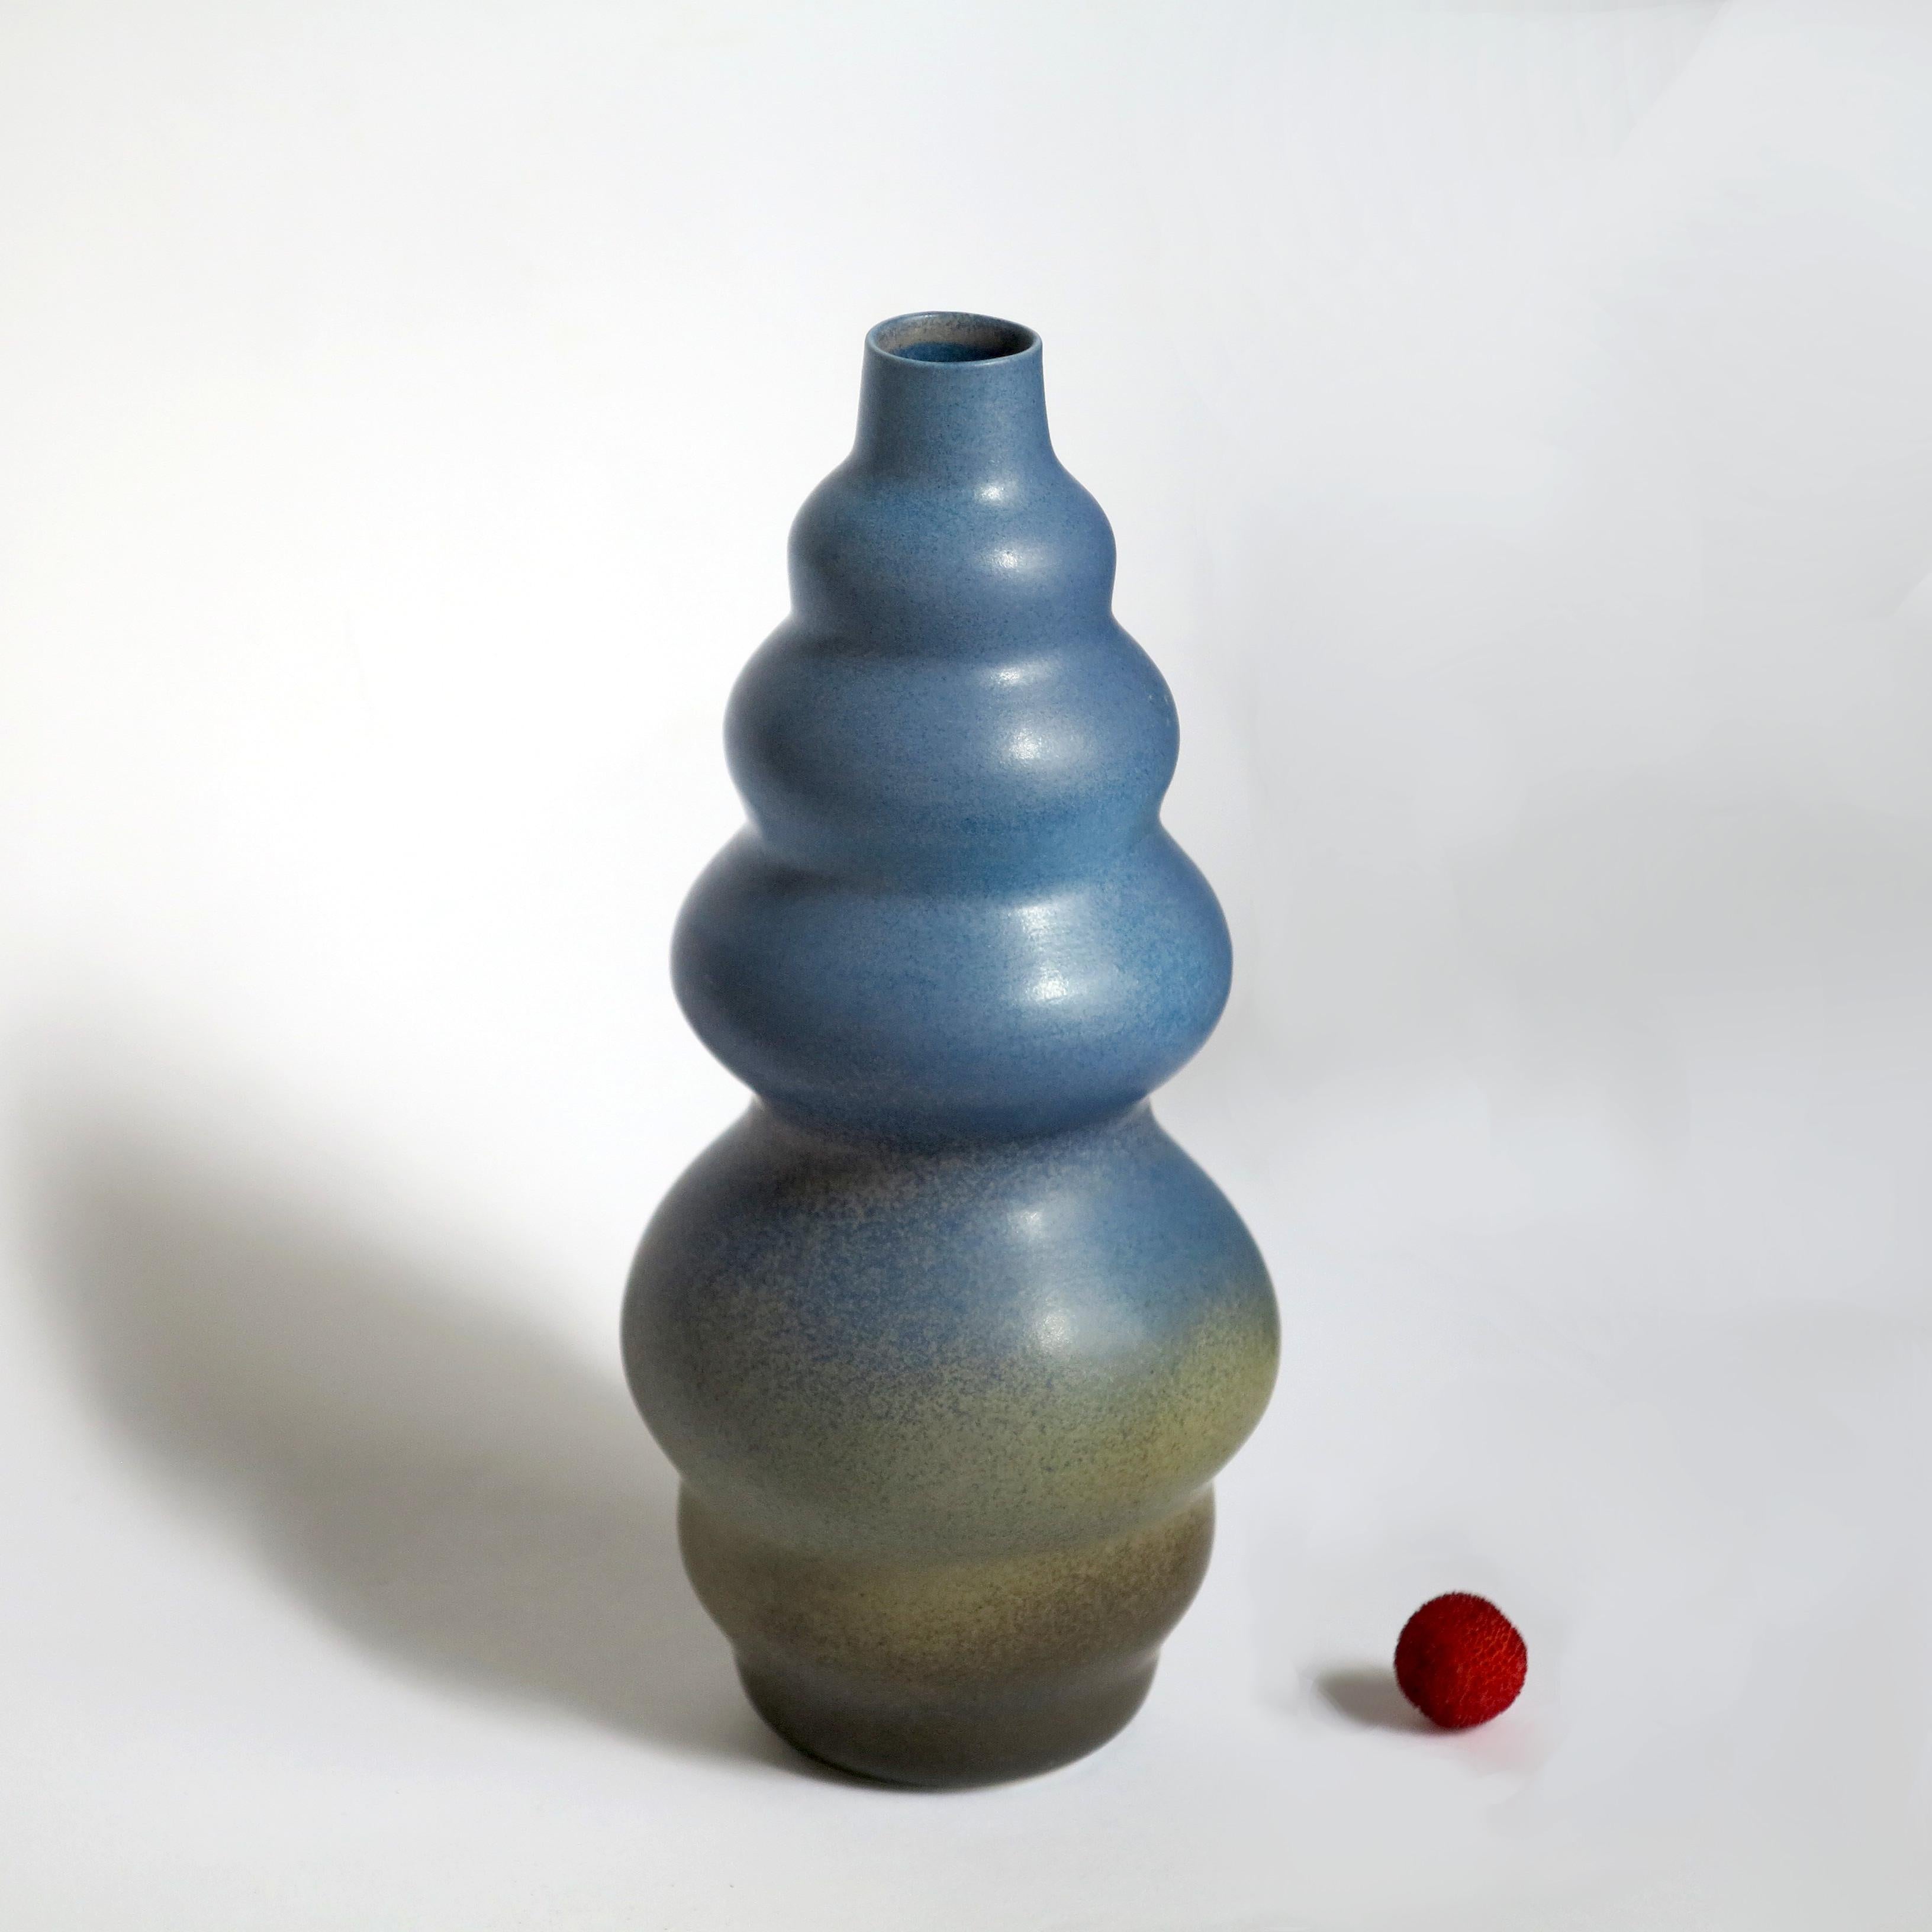 Grand vase Jaune par Cica Gomez
Dimensions : Ø 8 x H 20,5 cm
Matériaux : Porcelaine


Objets habituels. Mon travail est d'abord motivé par la recherche de la ligne. Celui qu'il dessine lorsque l'objet prend forme et place dans l'espace. Ce qui